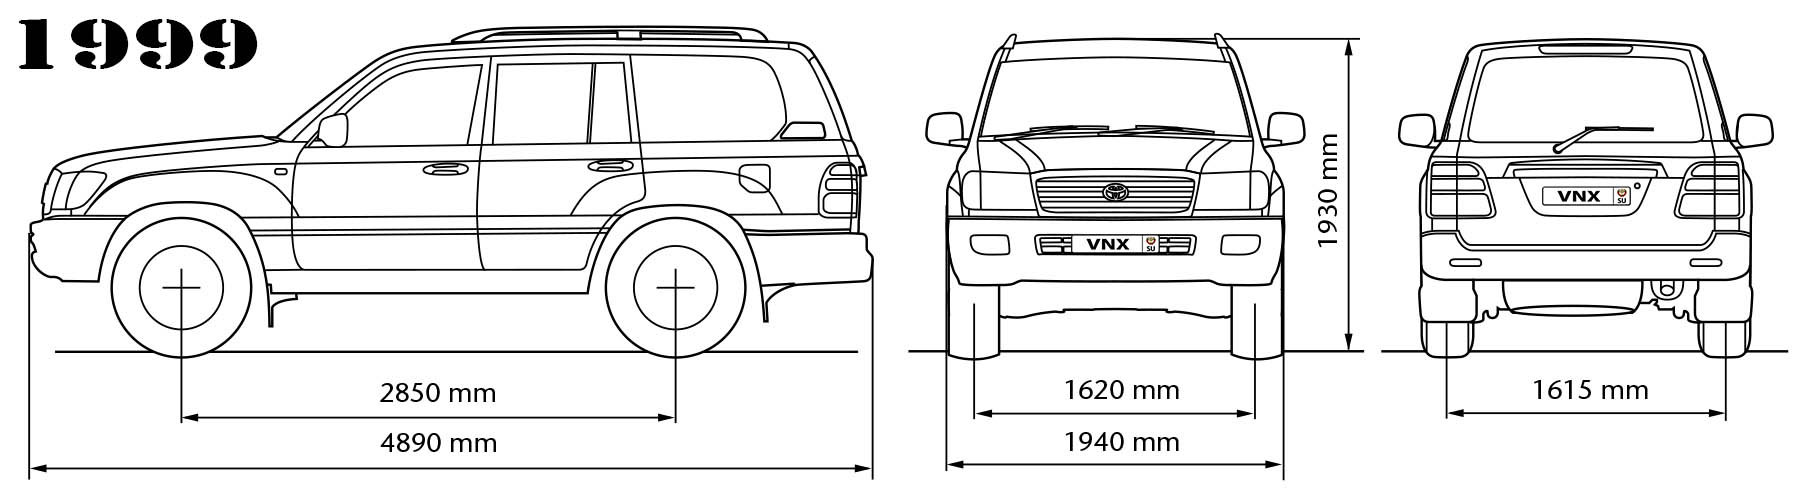 Габаритные размеры Тойота Ленд Крузер 100 дизельные 1998-2007 (dimensions Toyota Land Cruiser J100 diesel)